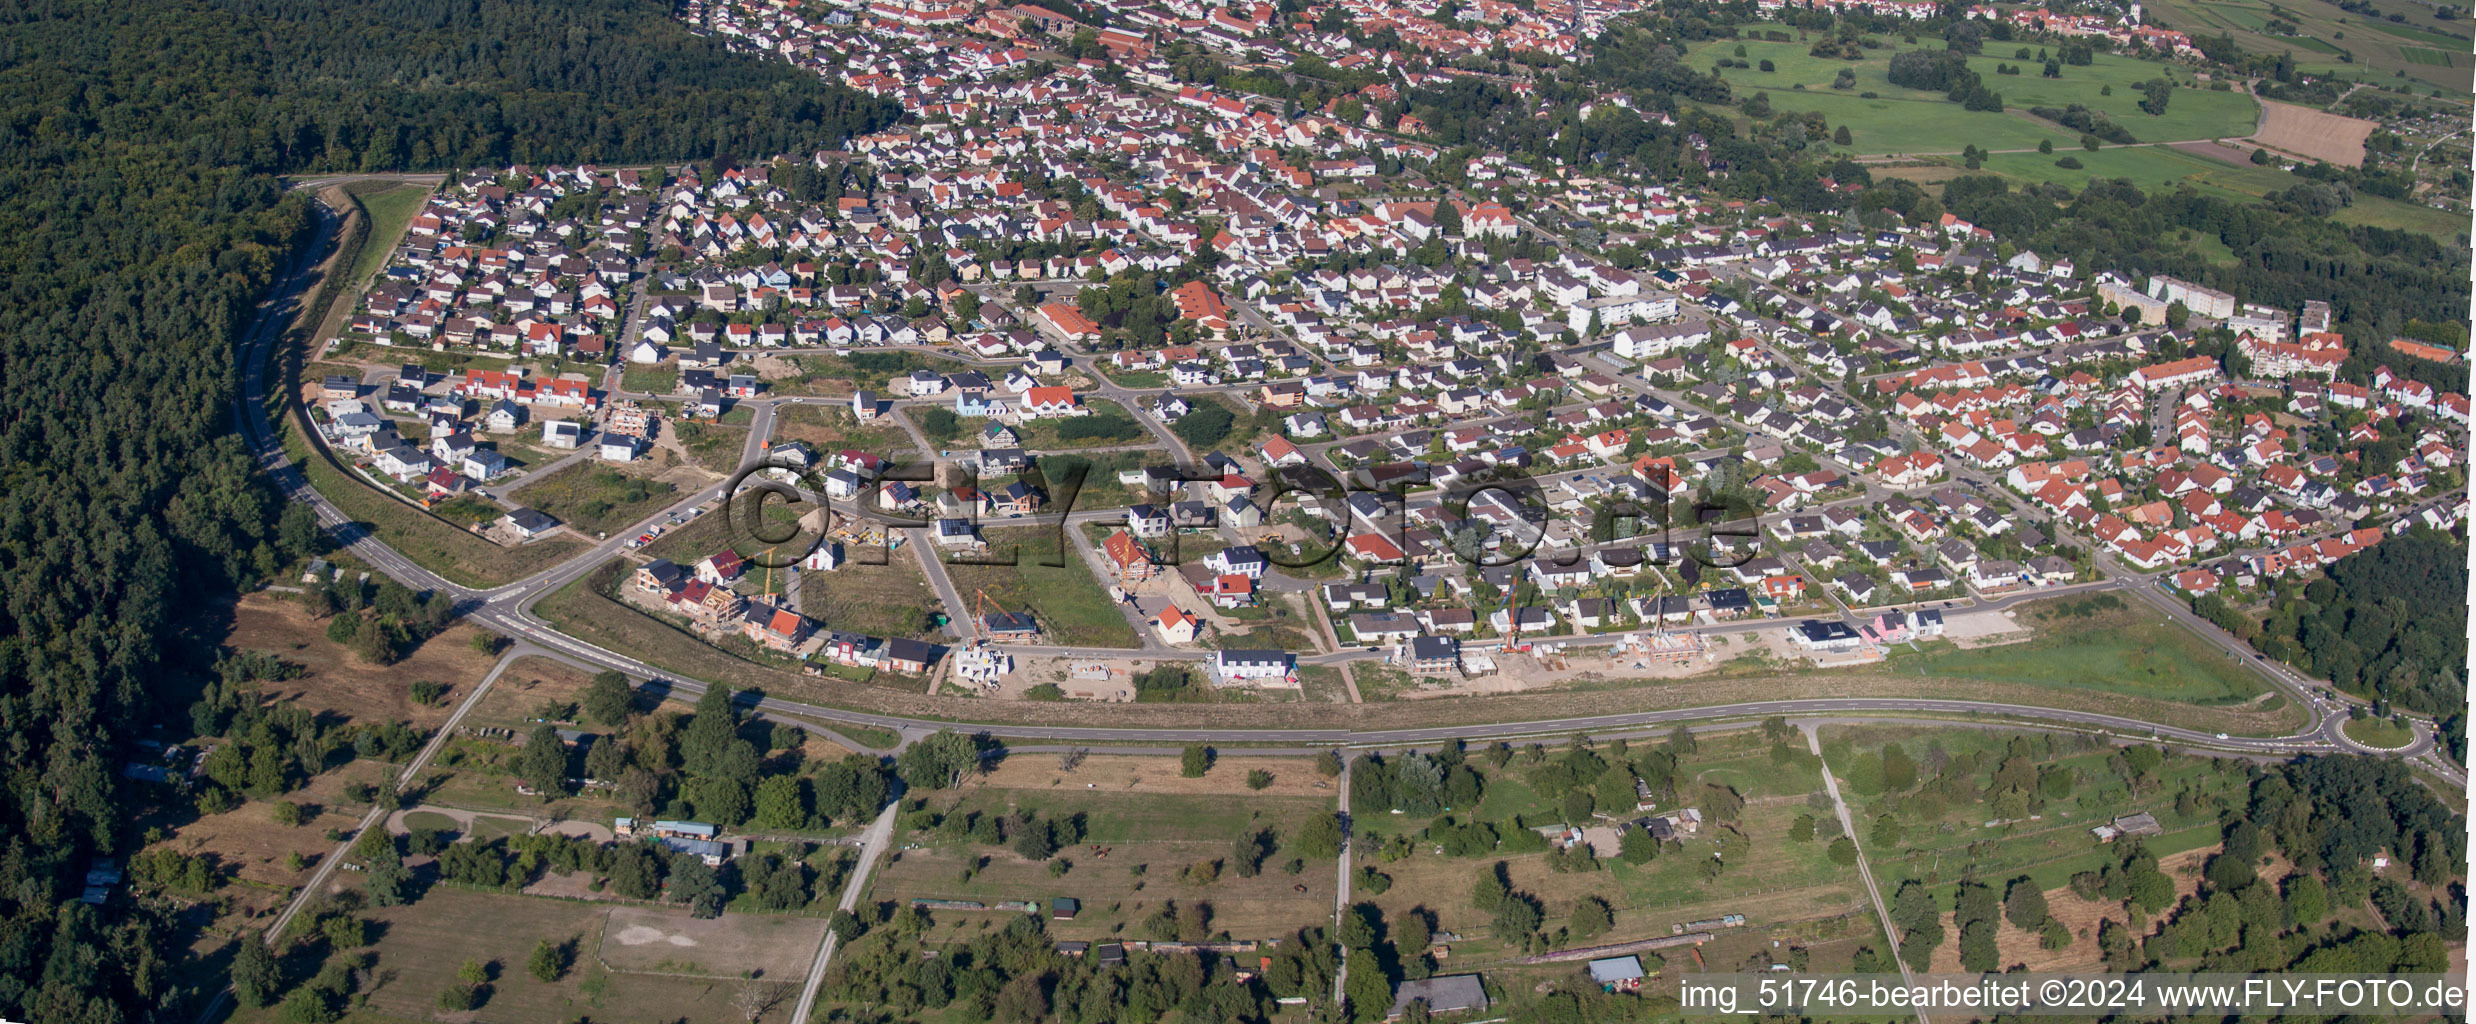 Vue aérienne de Chantiers en perspective panoramique pour le nouveau quartier résidentiel d'un lotissement de maisons unifamiliales à l'ouest à Jockgrim dans le département Rhénanie-Palatinat, Allemagne